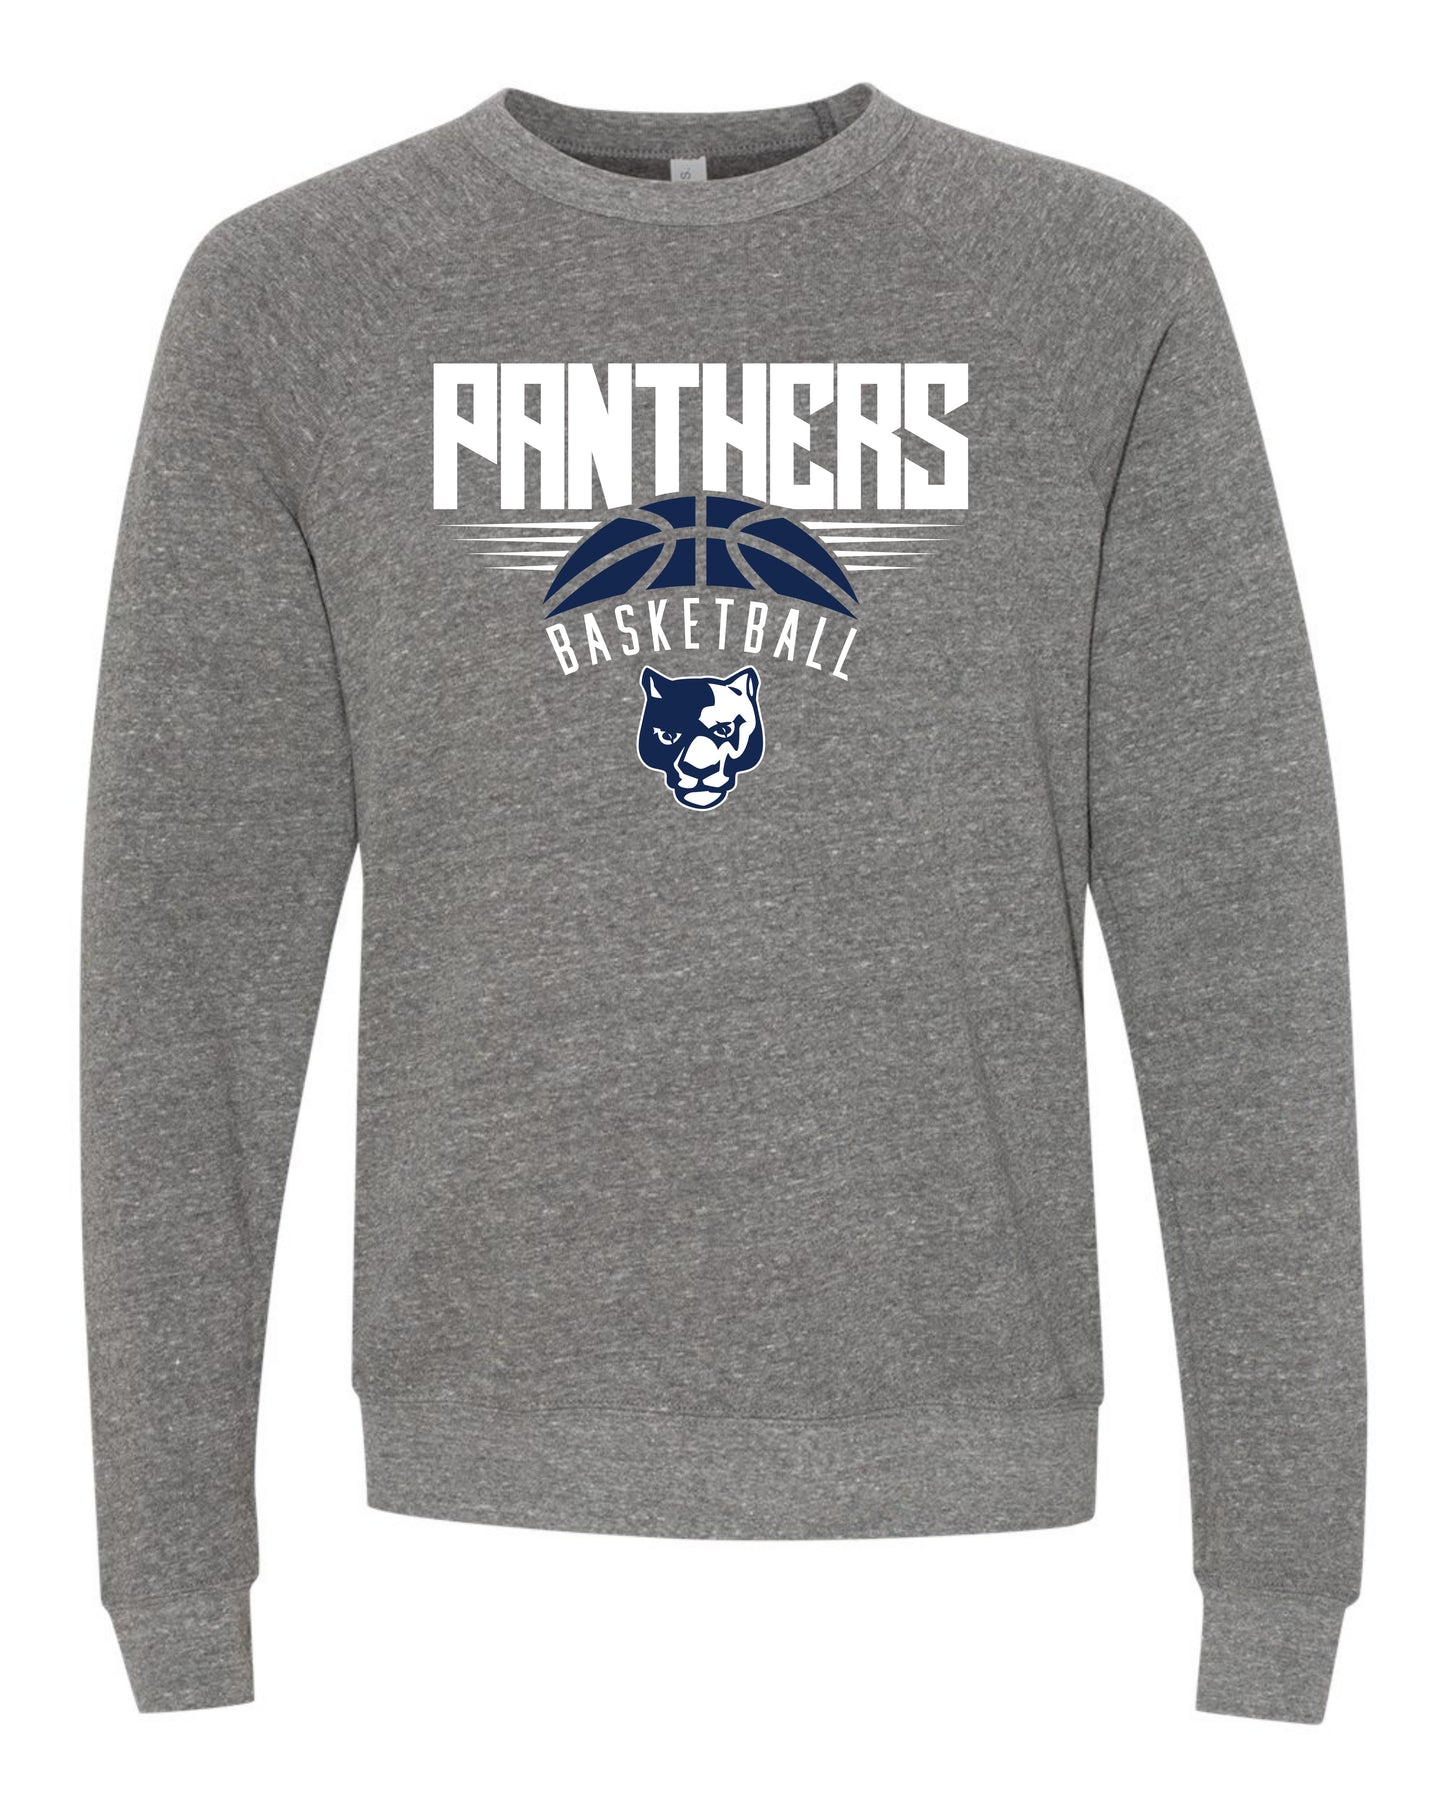 Panthers Basketball - Youth Sweatshirt